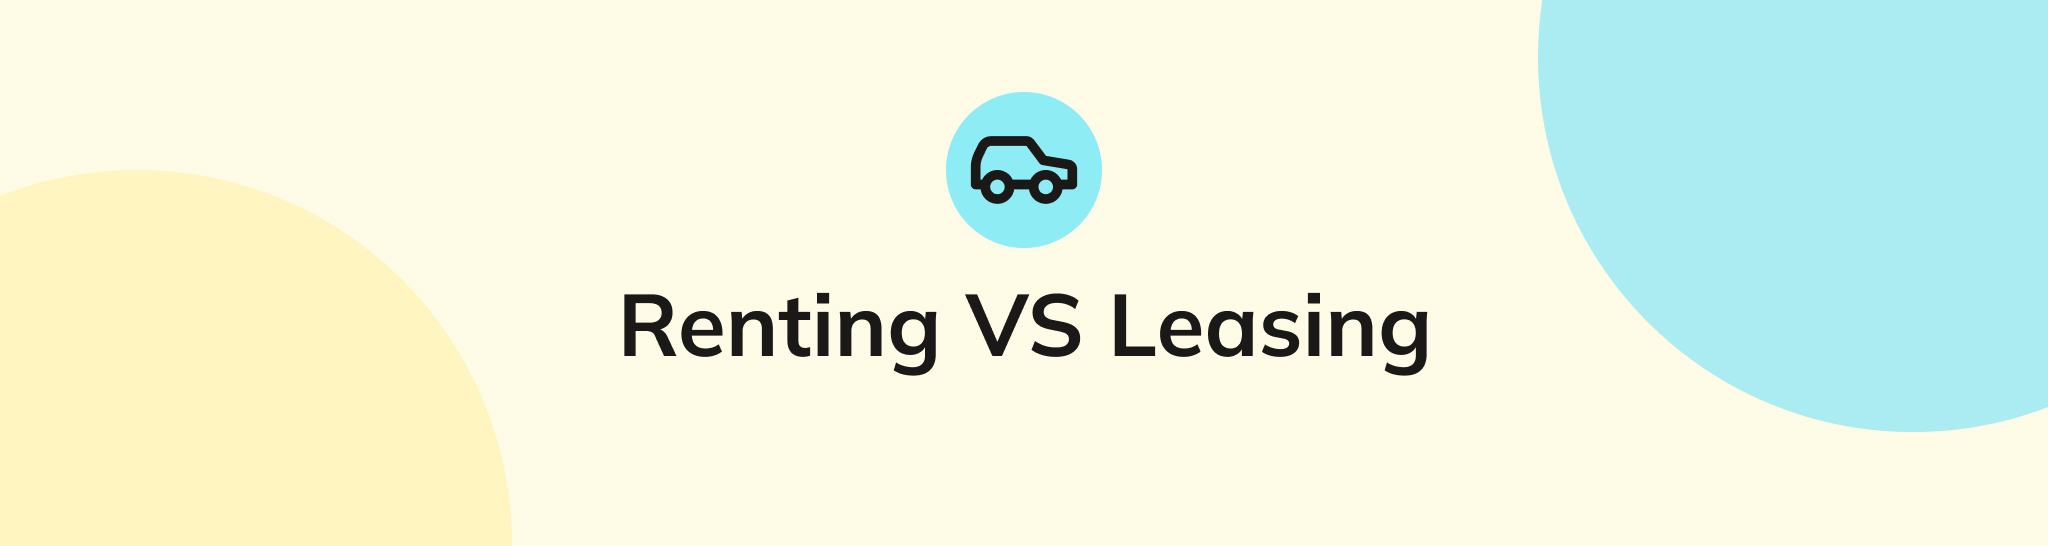 Renting versus leasing para autónomos